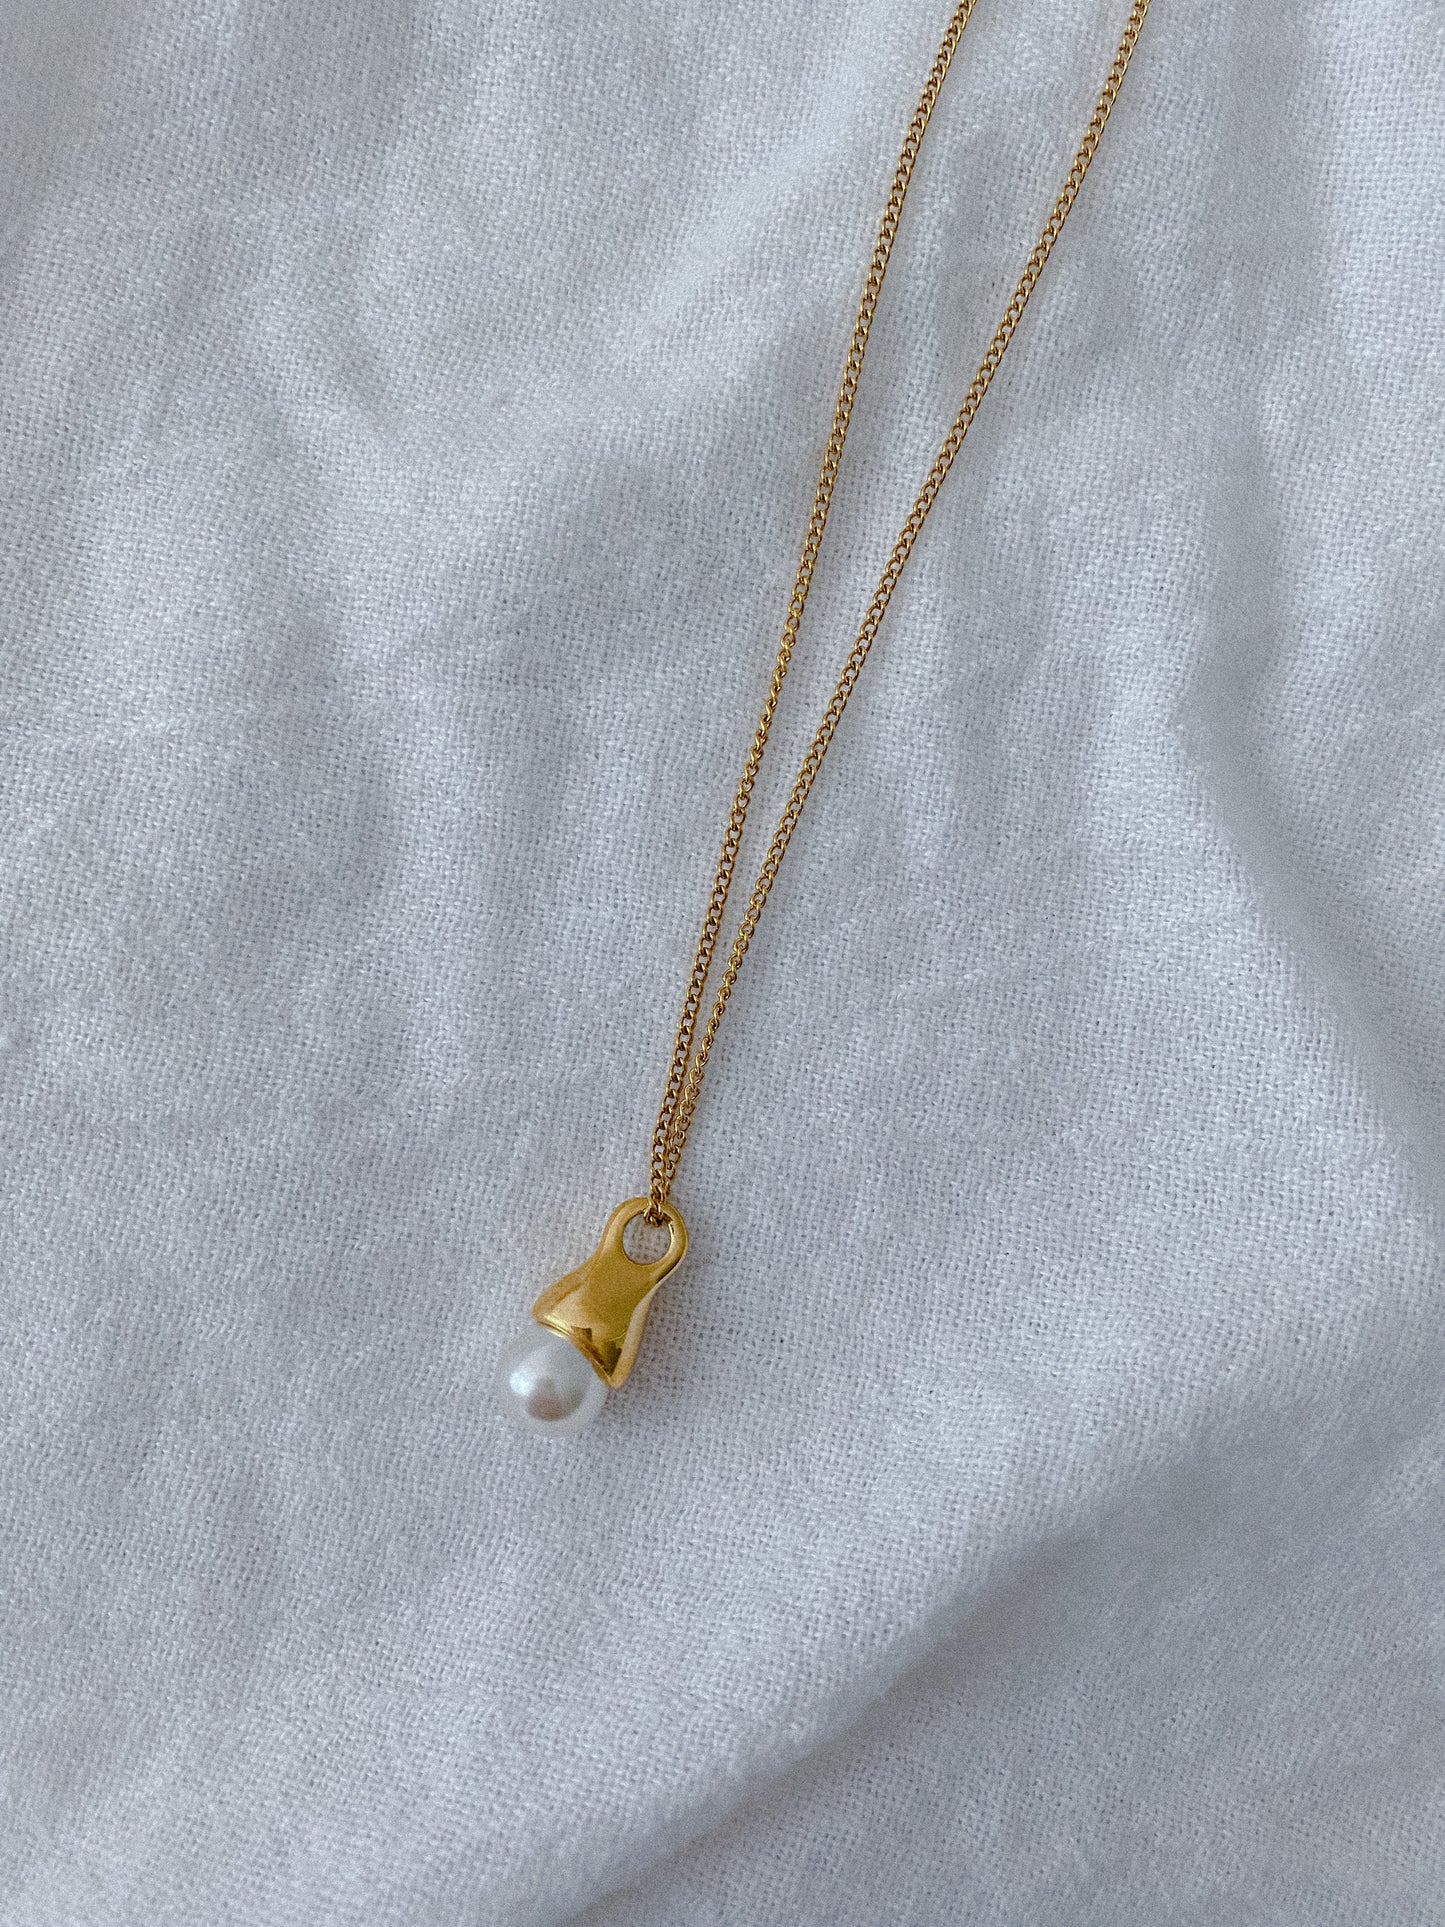 Hawaiian Pearl Necklace